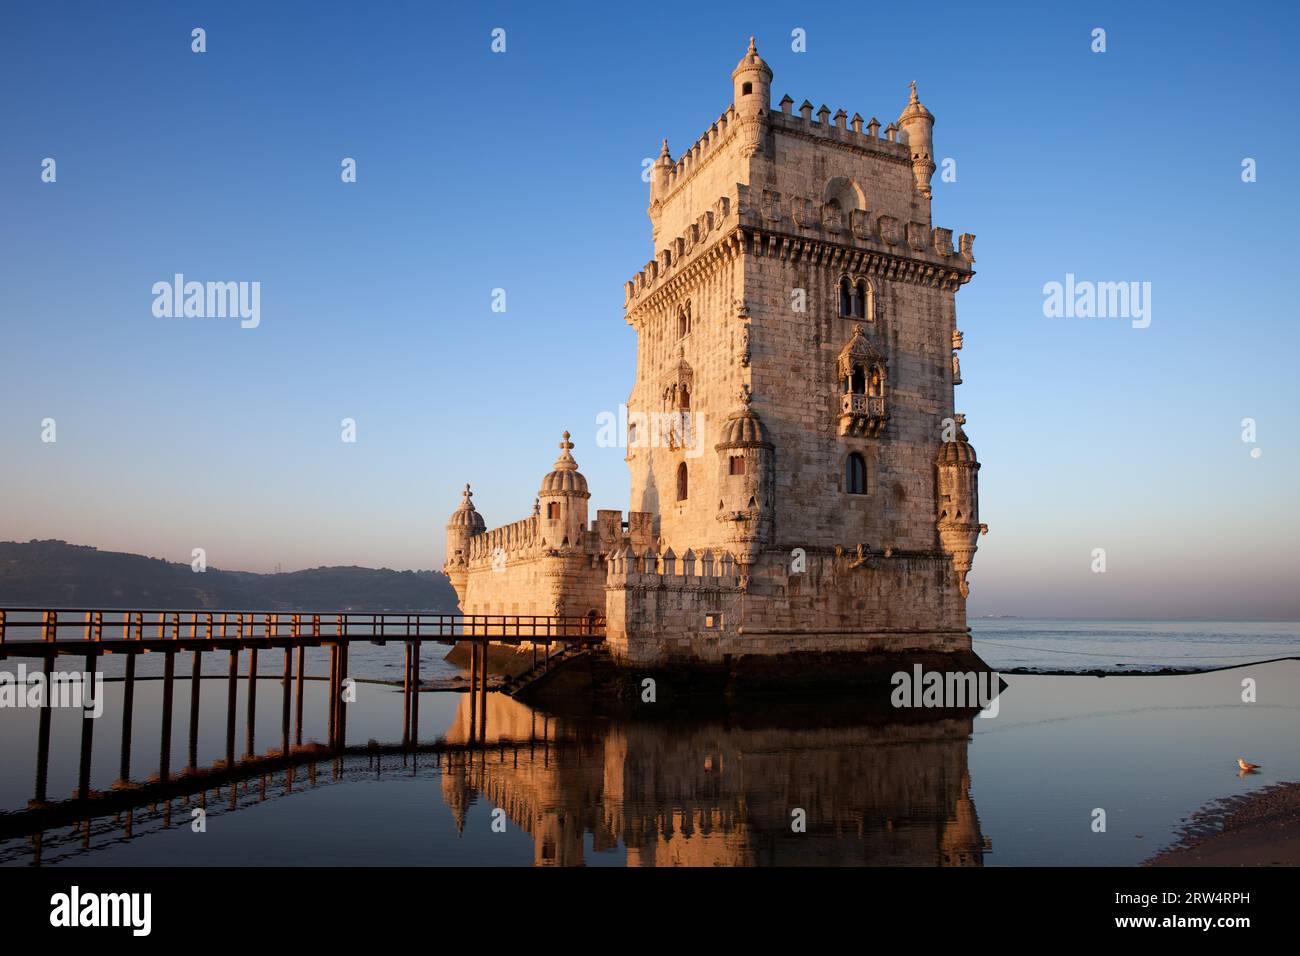 Turm von Belem in Lissabon, Portugal, Wahrzeichen der Stadt, 16. Jahrhundert Festung am ruhigen Morgen am Fluss Tajo (Tejo) Stockfoto